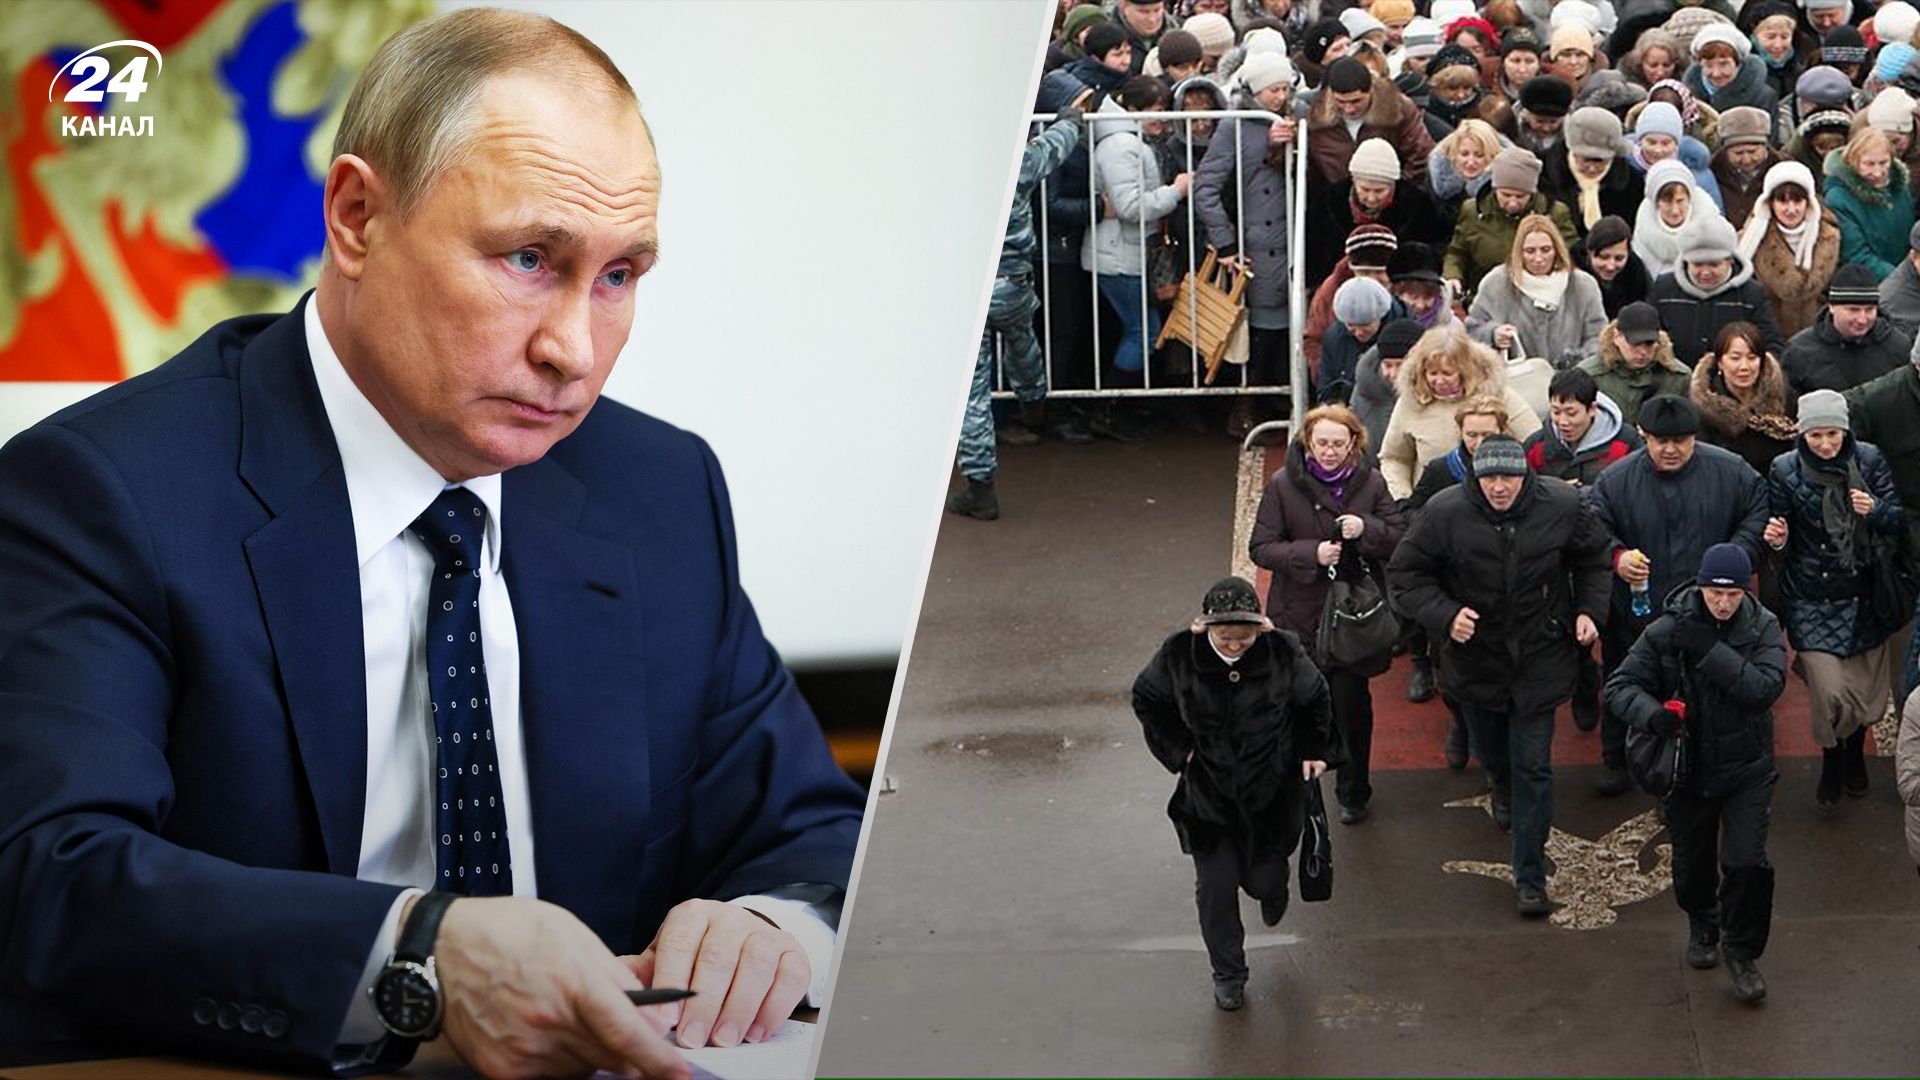 Росіяни панічно гуглять, як виїхати з країни й "відмазатися" від армії перед зверненням путіна